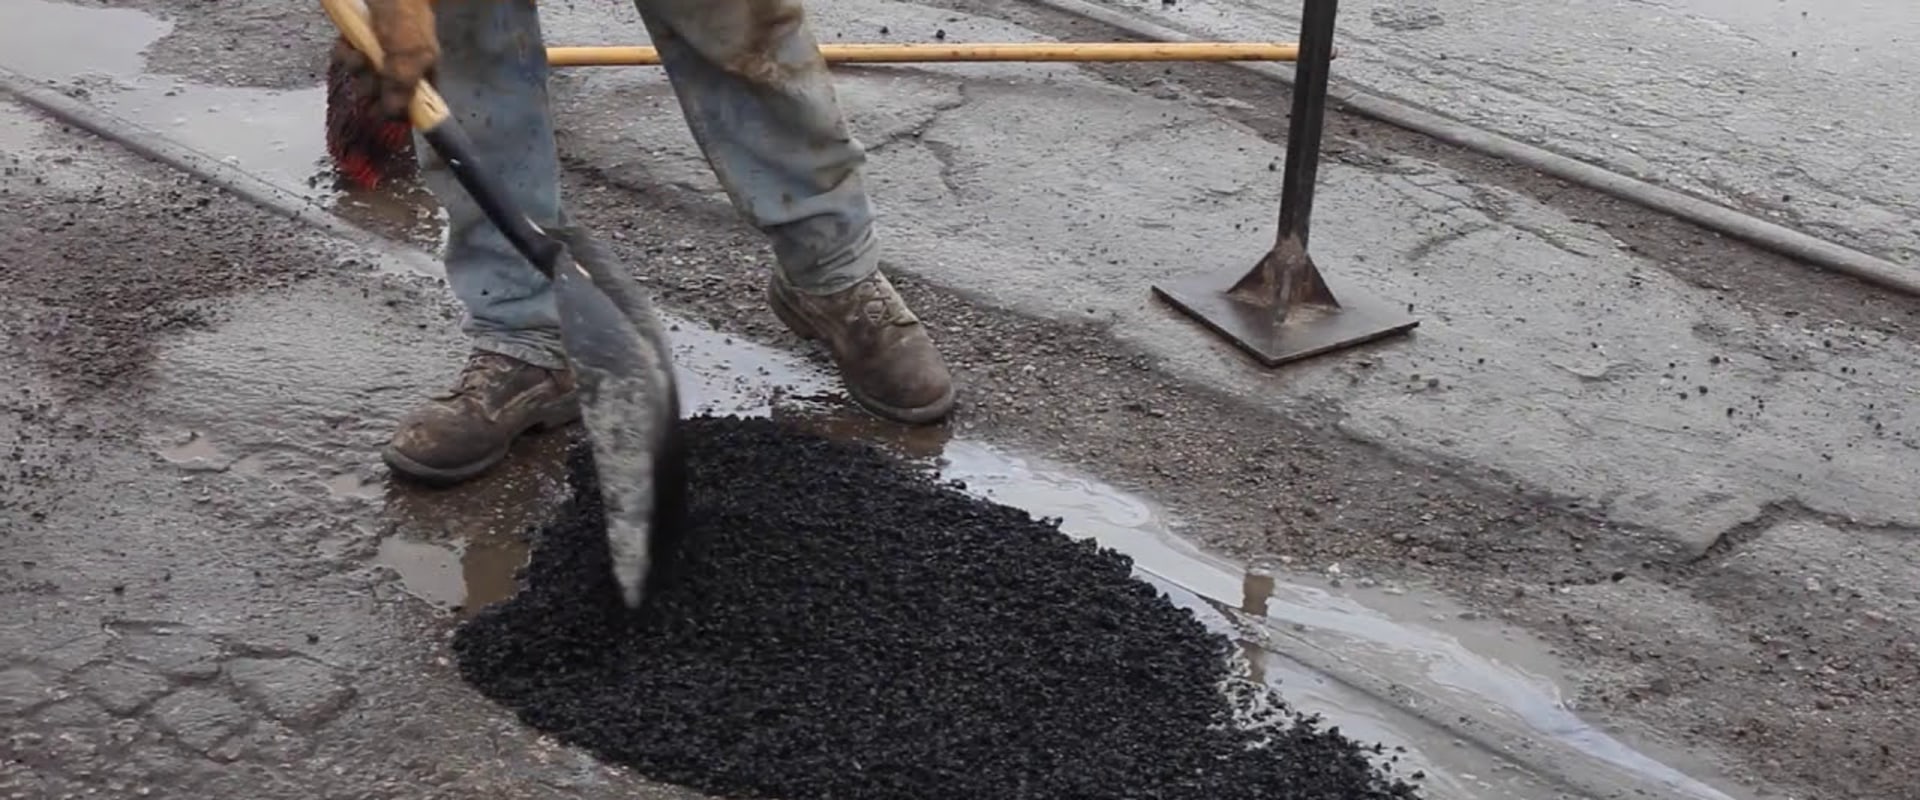 Repairing Asphalt Potholes with Cold Patch Mix